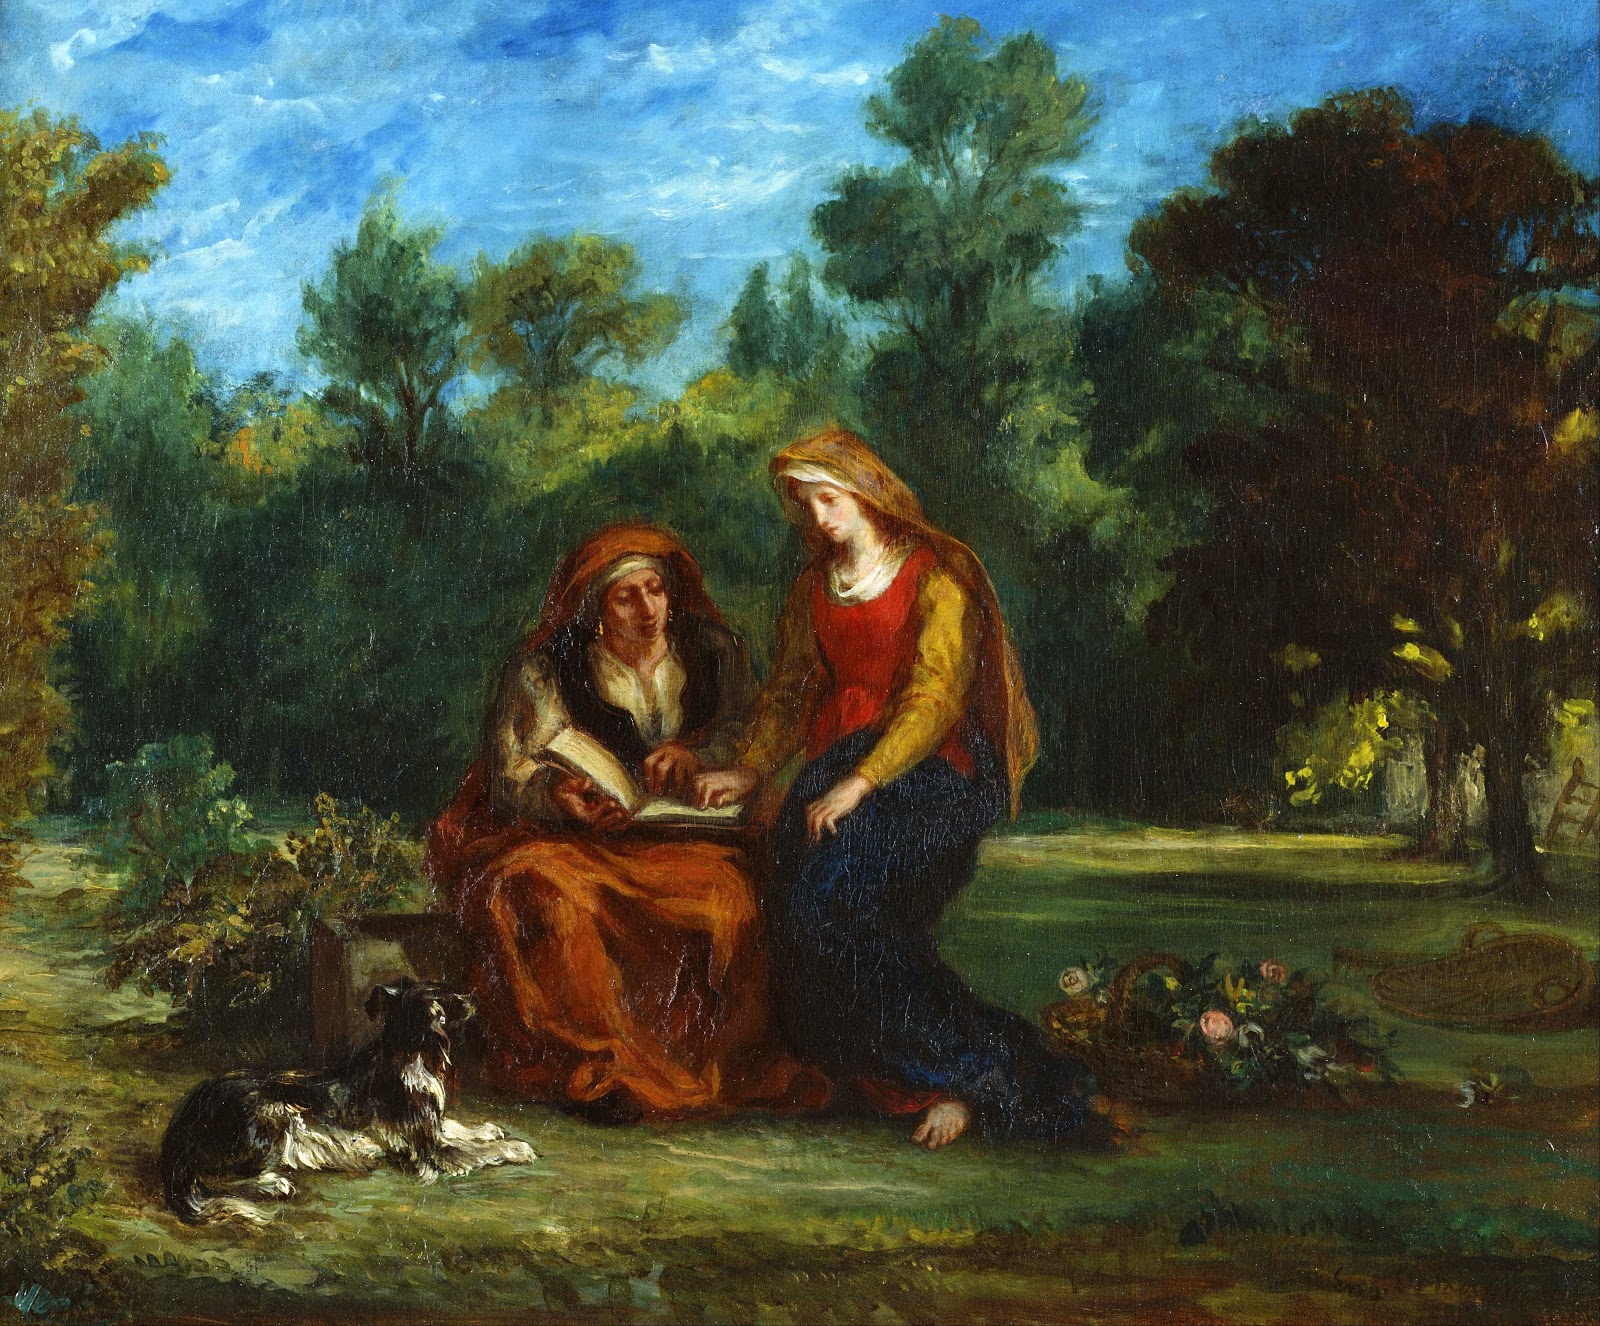 Eugene+Delacroix-1798-1863 (220).jpg